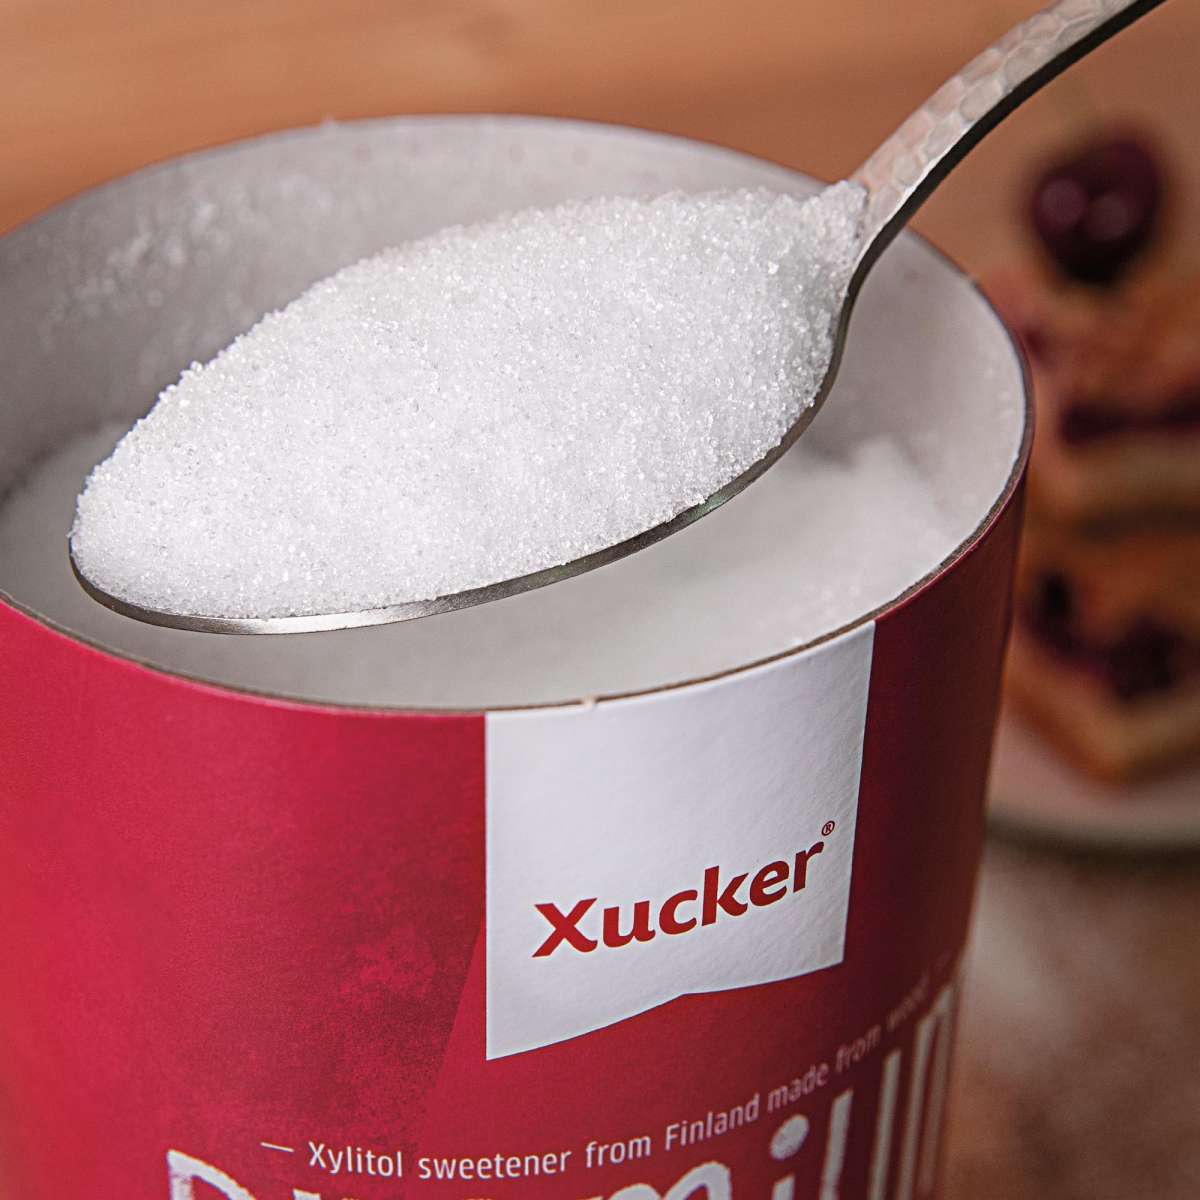 Xucker Premium Xylit (Finnland) - 1kg Dose